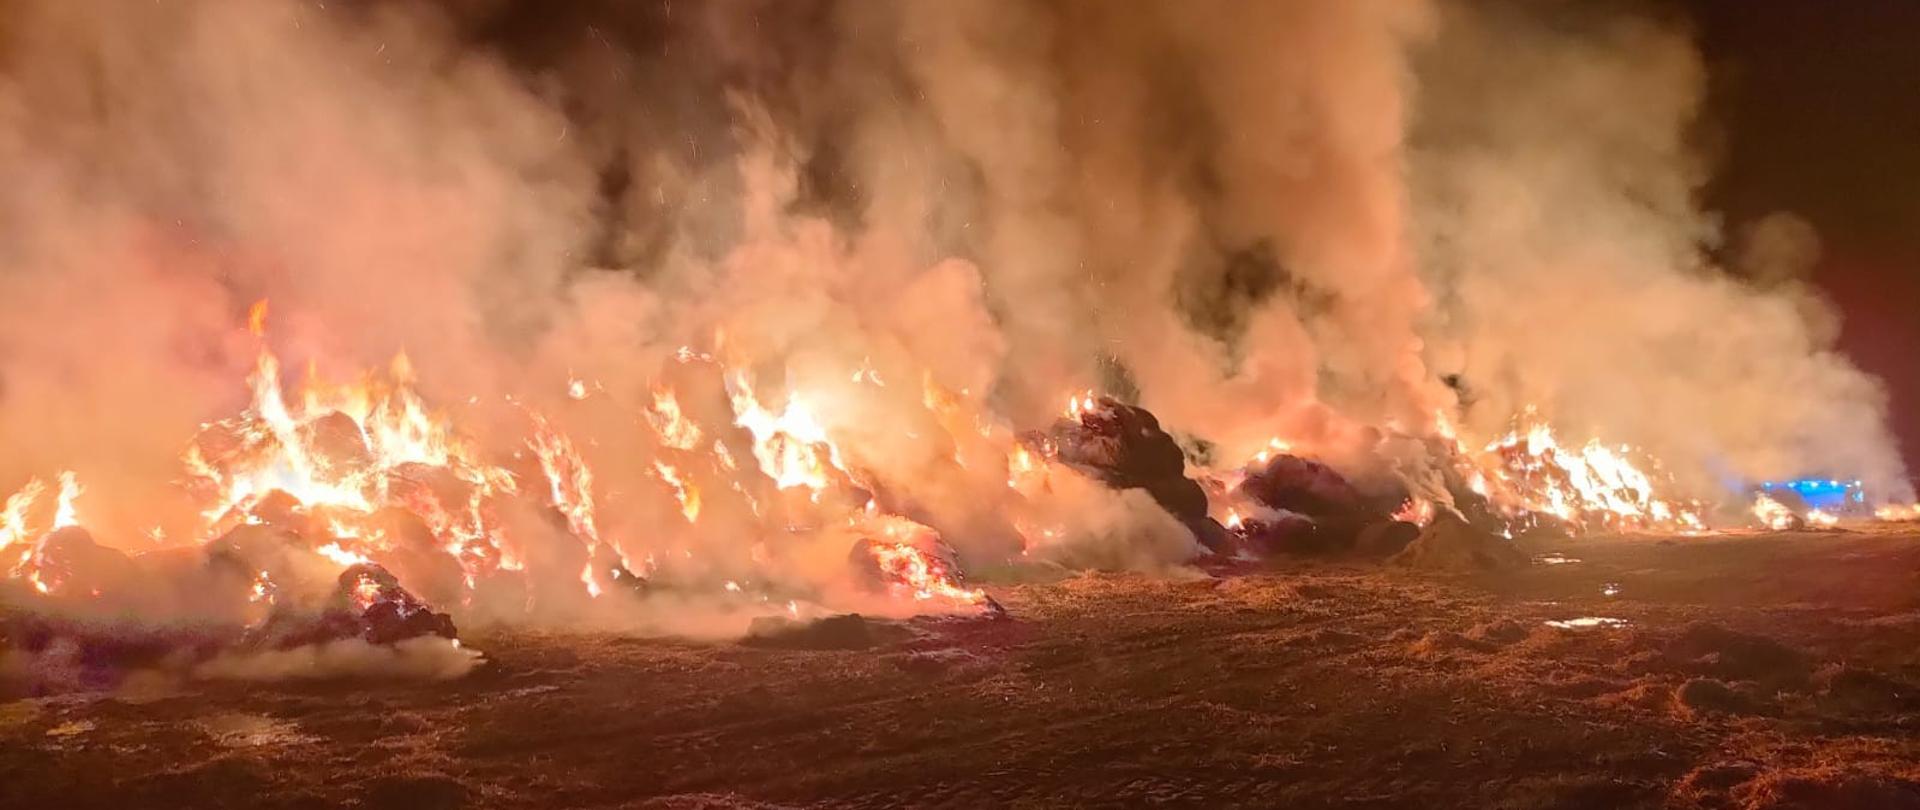 Na zdjęciu widać stertę słomy całkowicie objętą pożarem. W oddali za dymem widać niebieskie światła samochodu strażackiego. Jest ciemno.